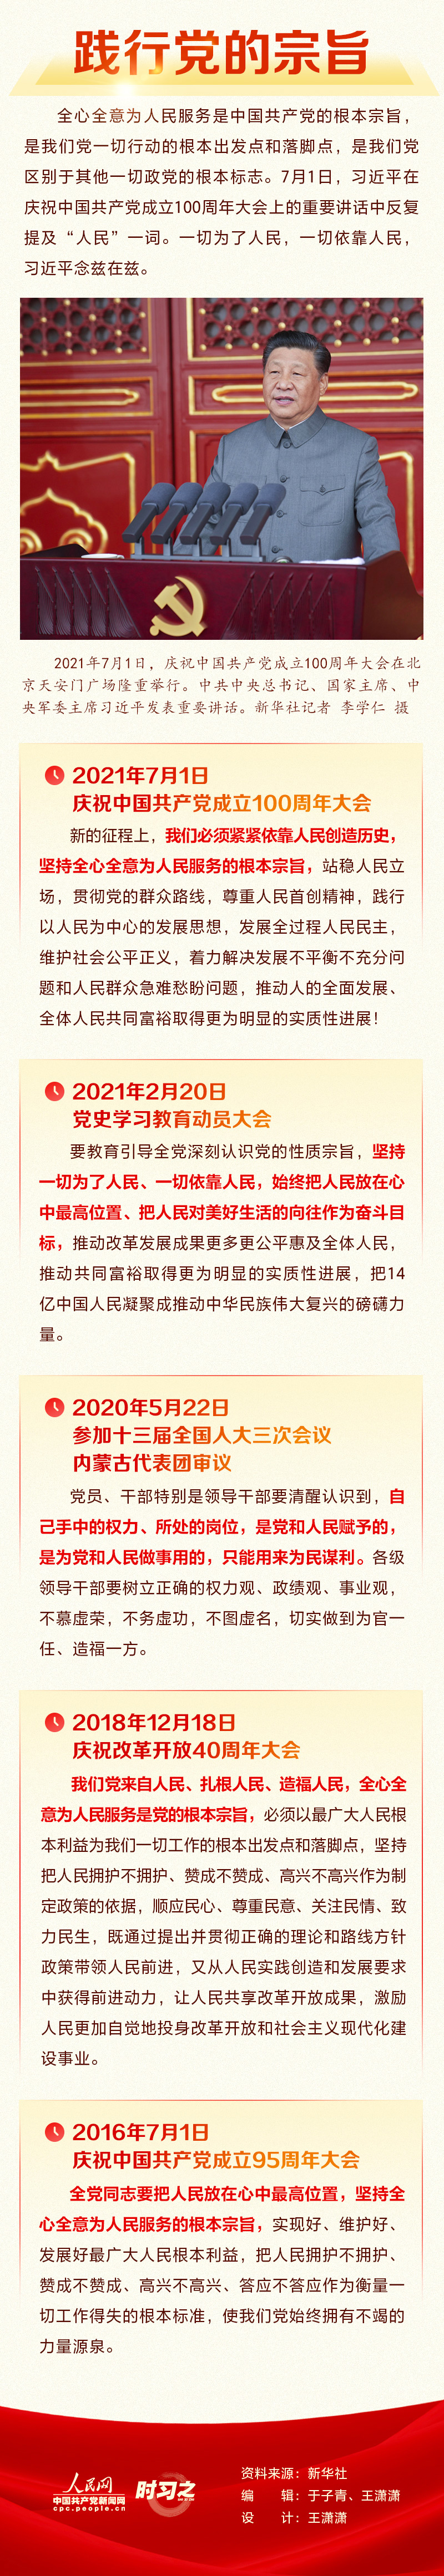 3全体中国共产党员要牢记 人民网-中国共产党新闻网.jpg